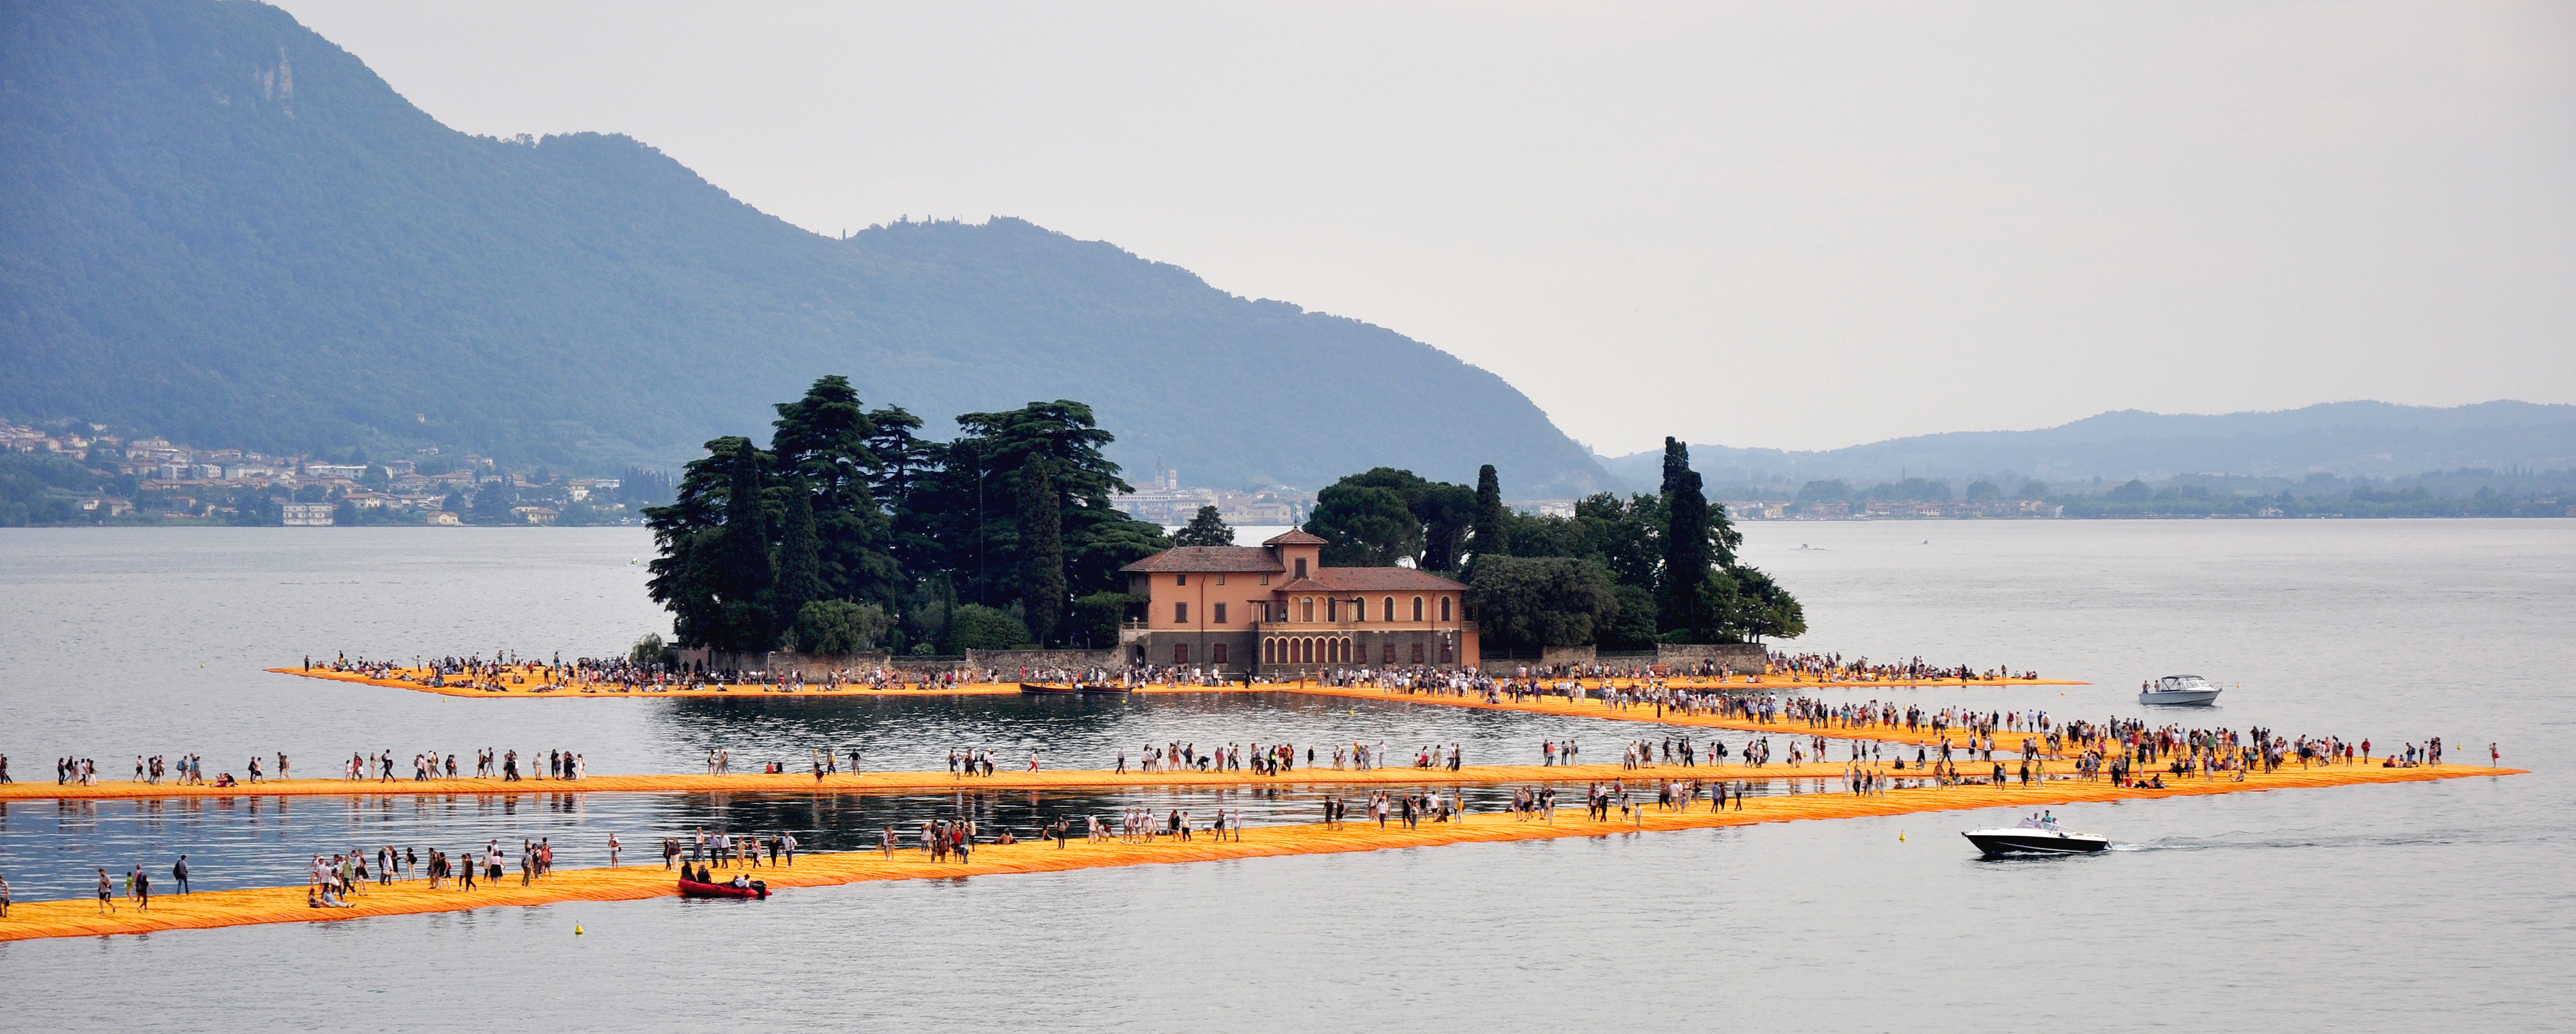 Floating Piers, uma das obras mais famosas de Christo (Fonte: Harald Bischoff)